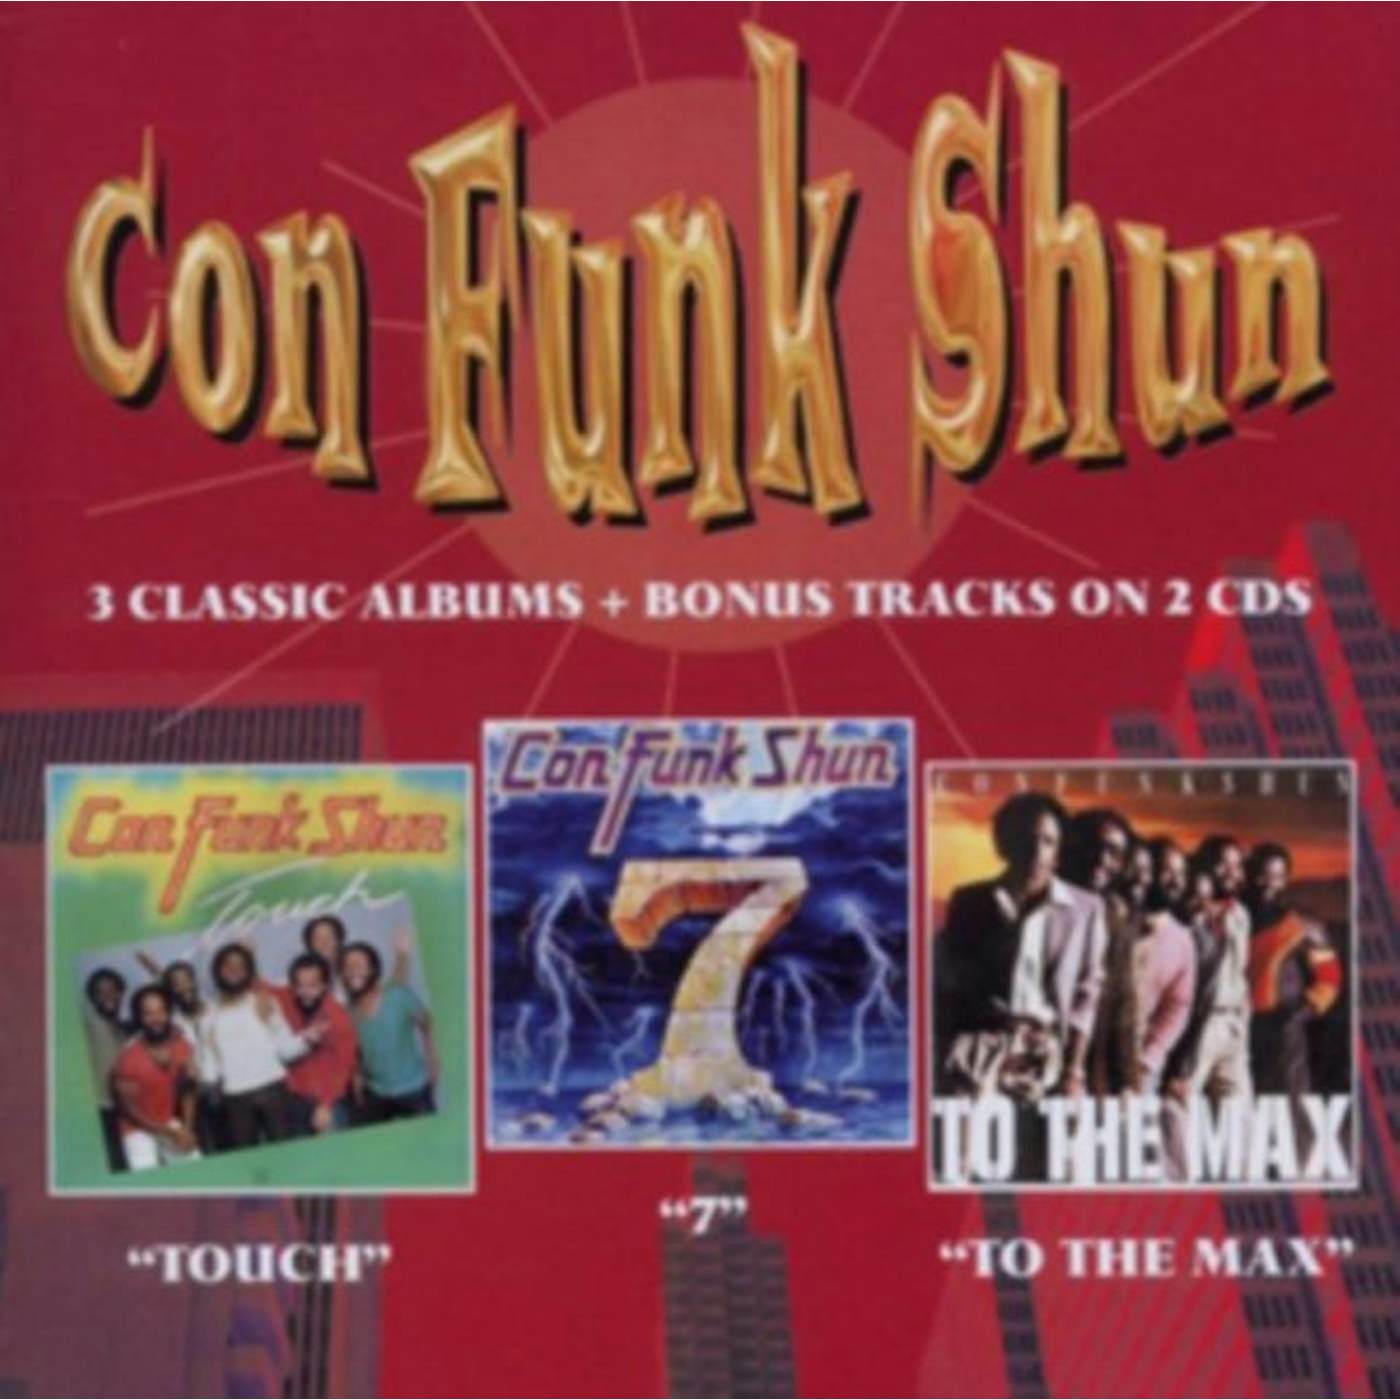 Con Funk Shun CD - Touch/Seven/To The Max